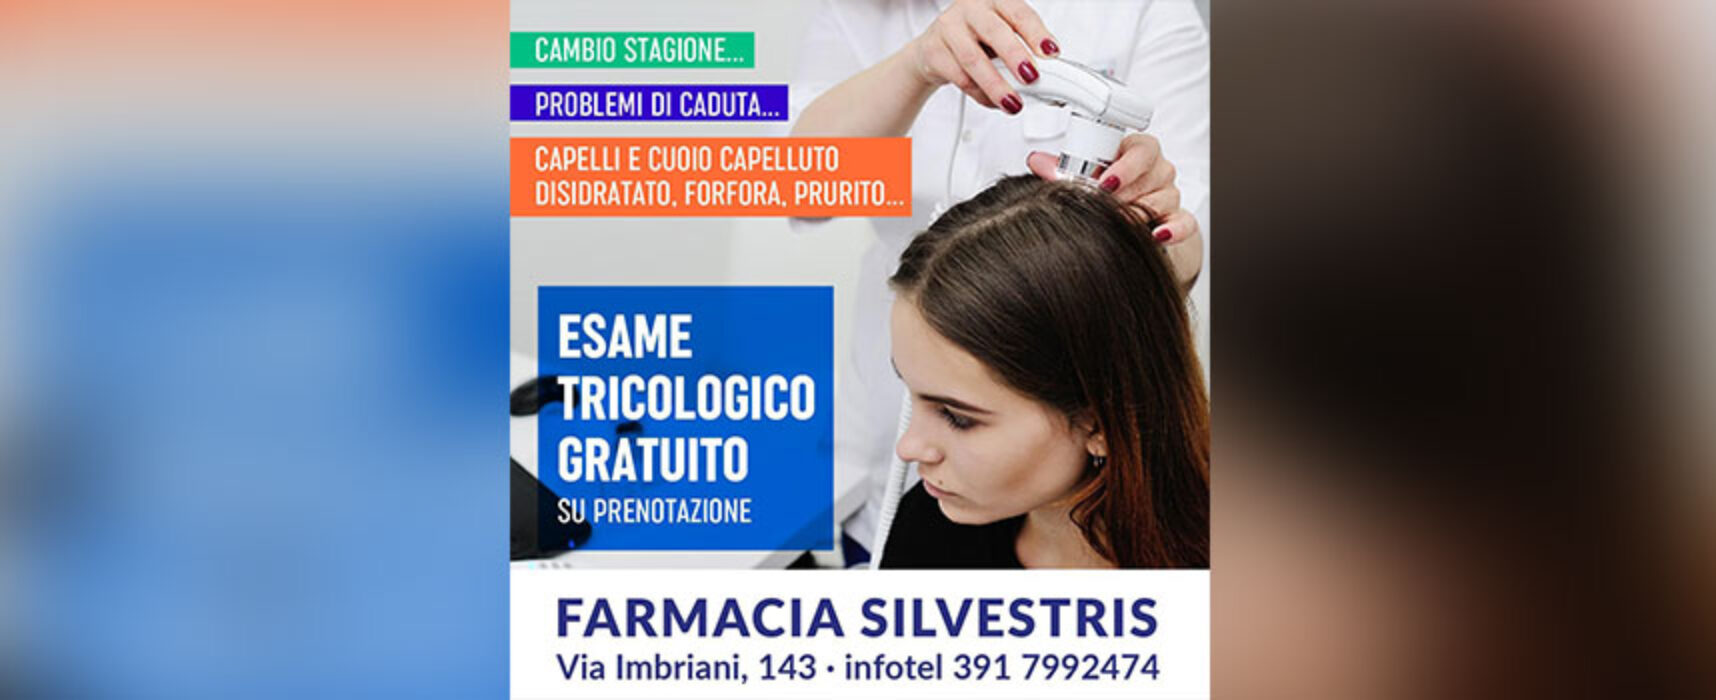 Settimana del capello: esame gratuito da farmacia Silvestris